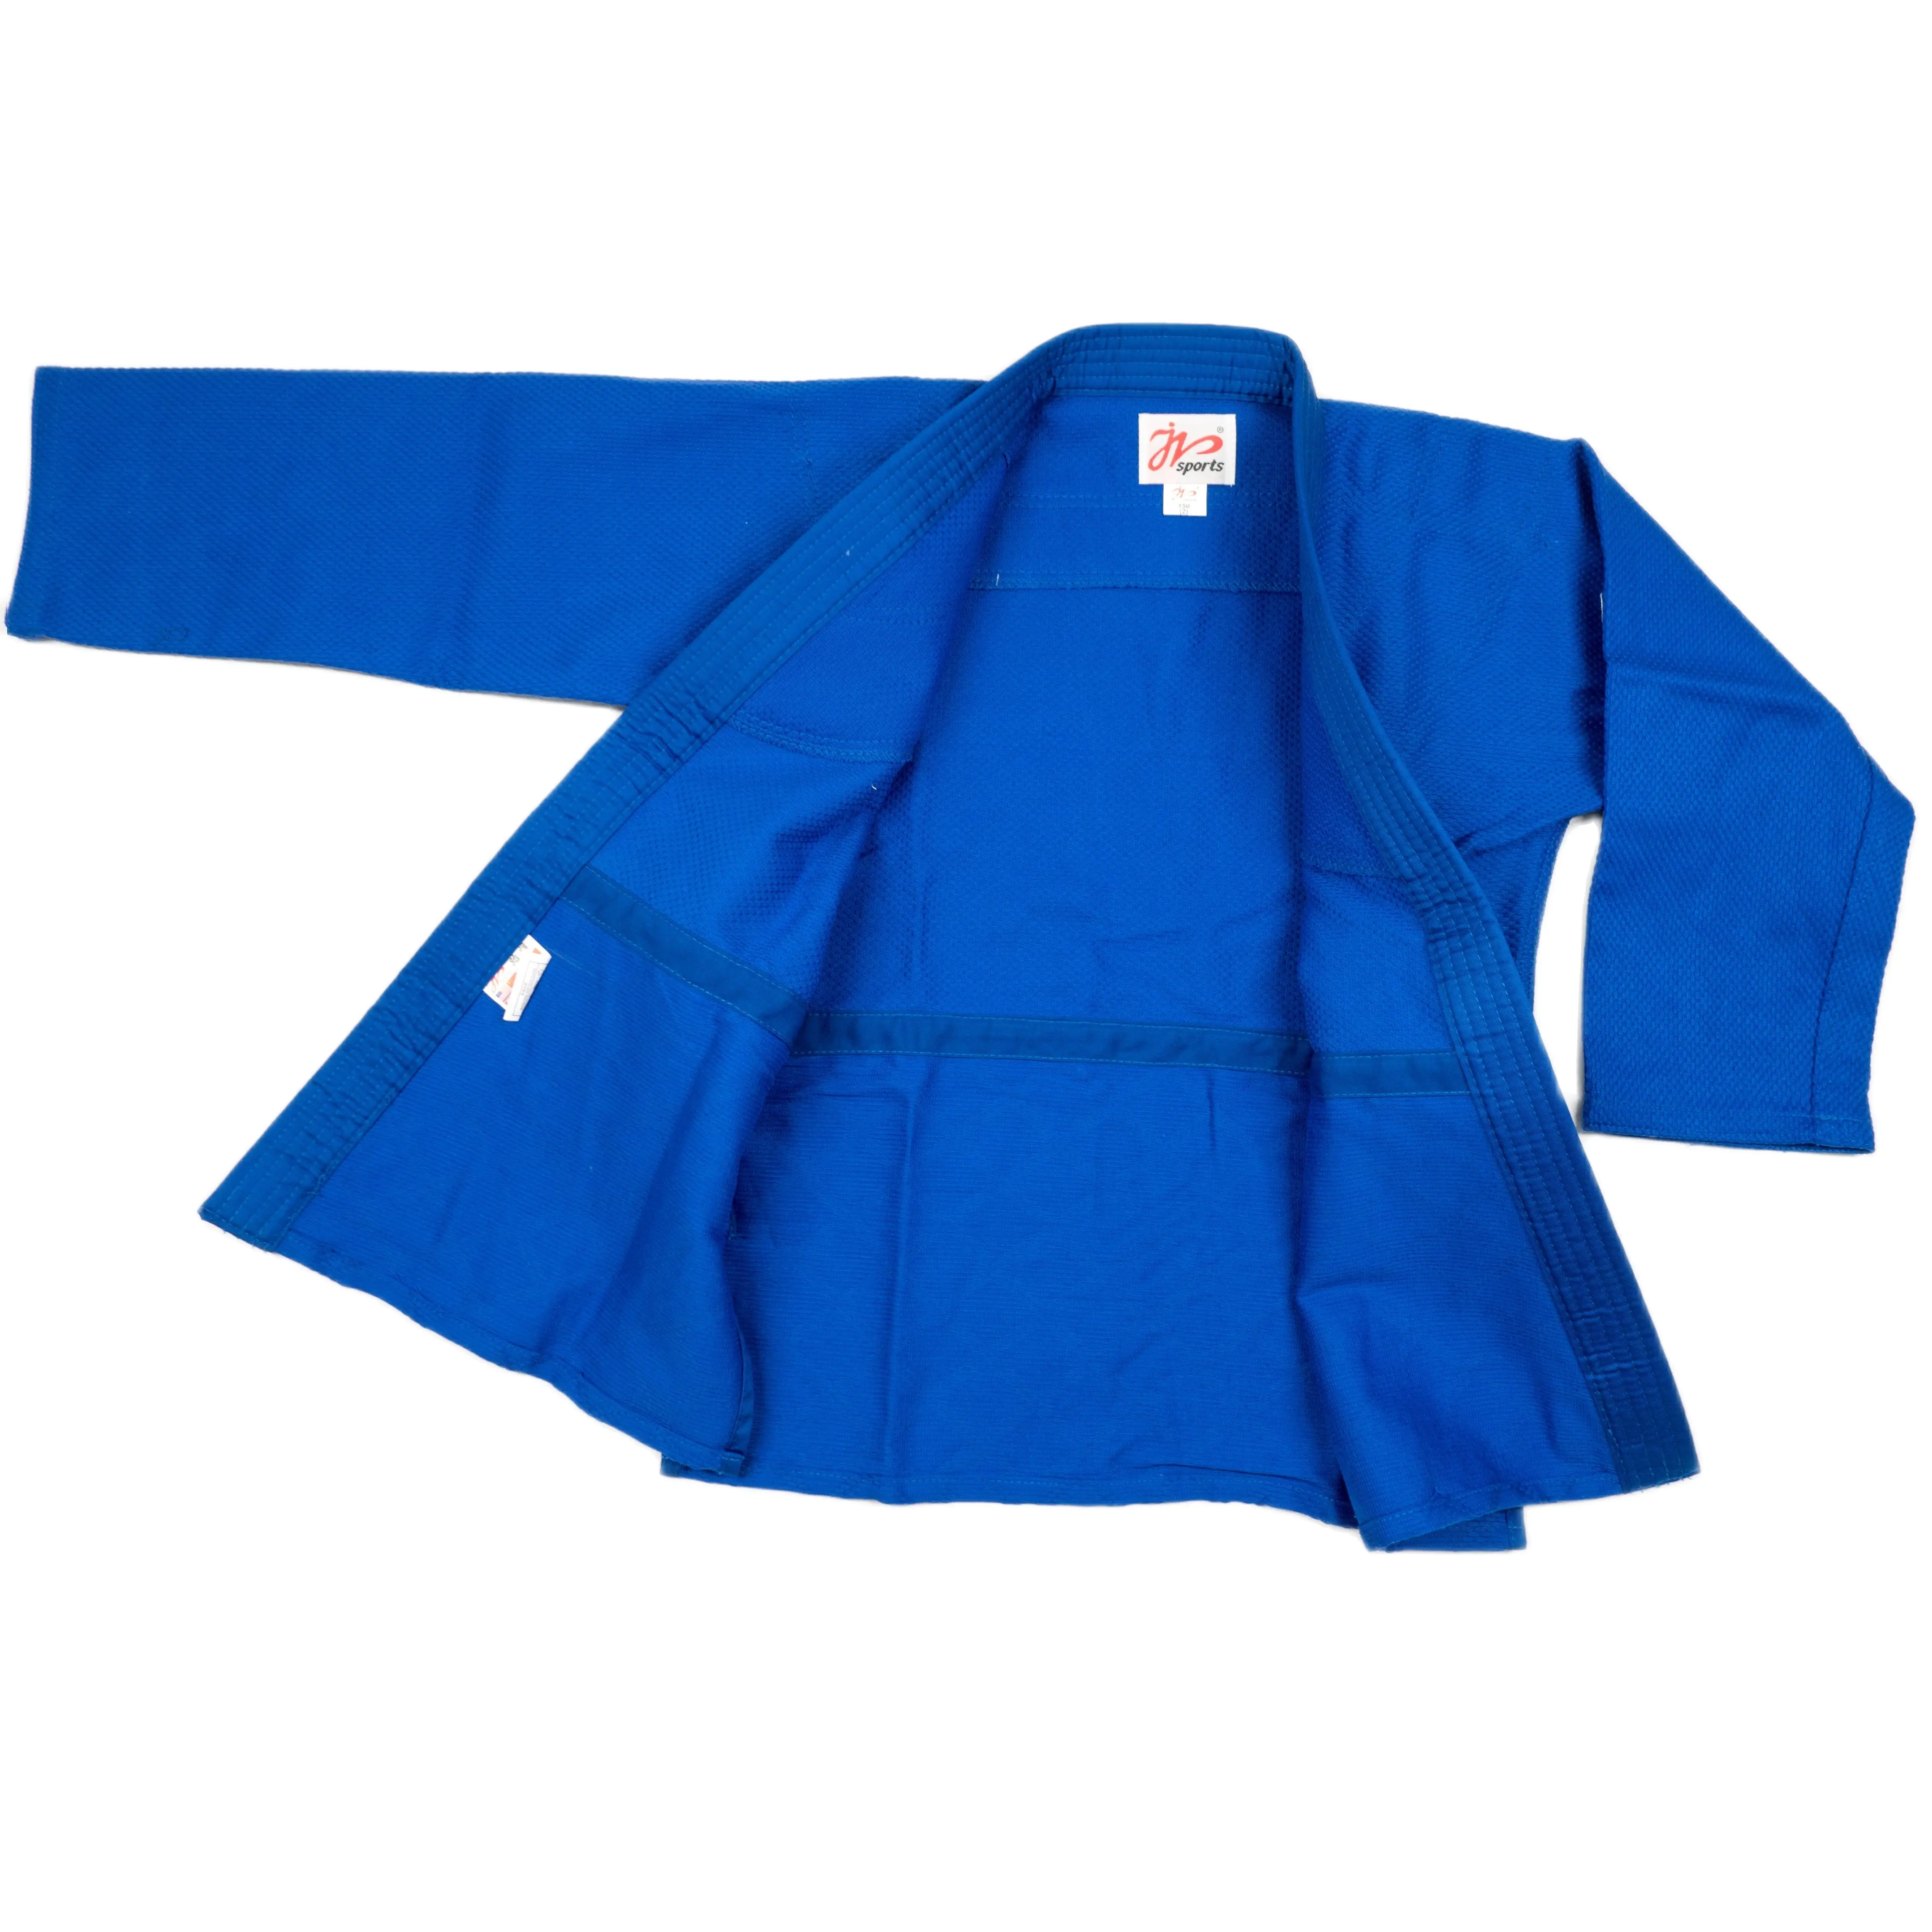 Uniforme de artes marciales profesional, Kimono azul y blanco de un solo tejido, perfecto para competición o entrenamiento con cinturón